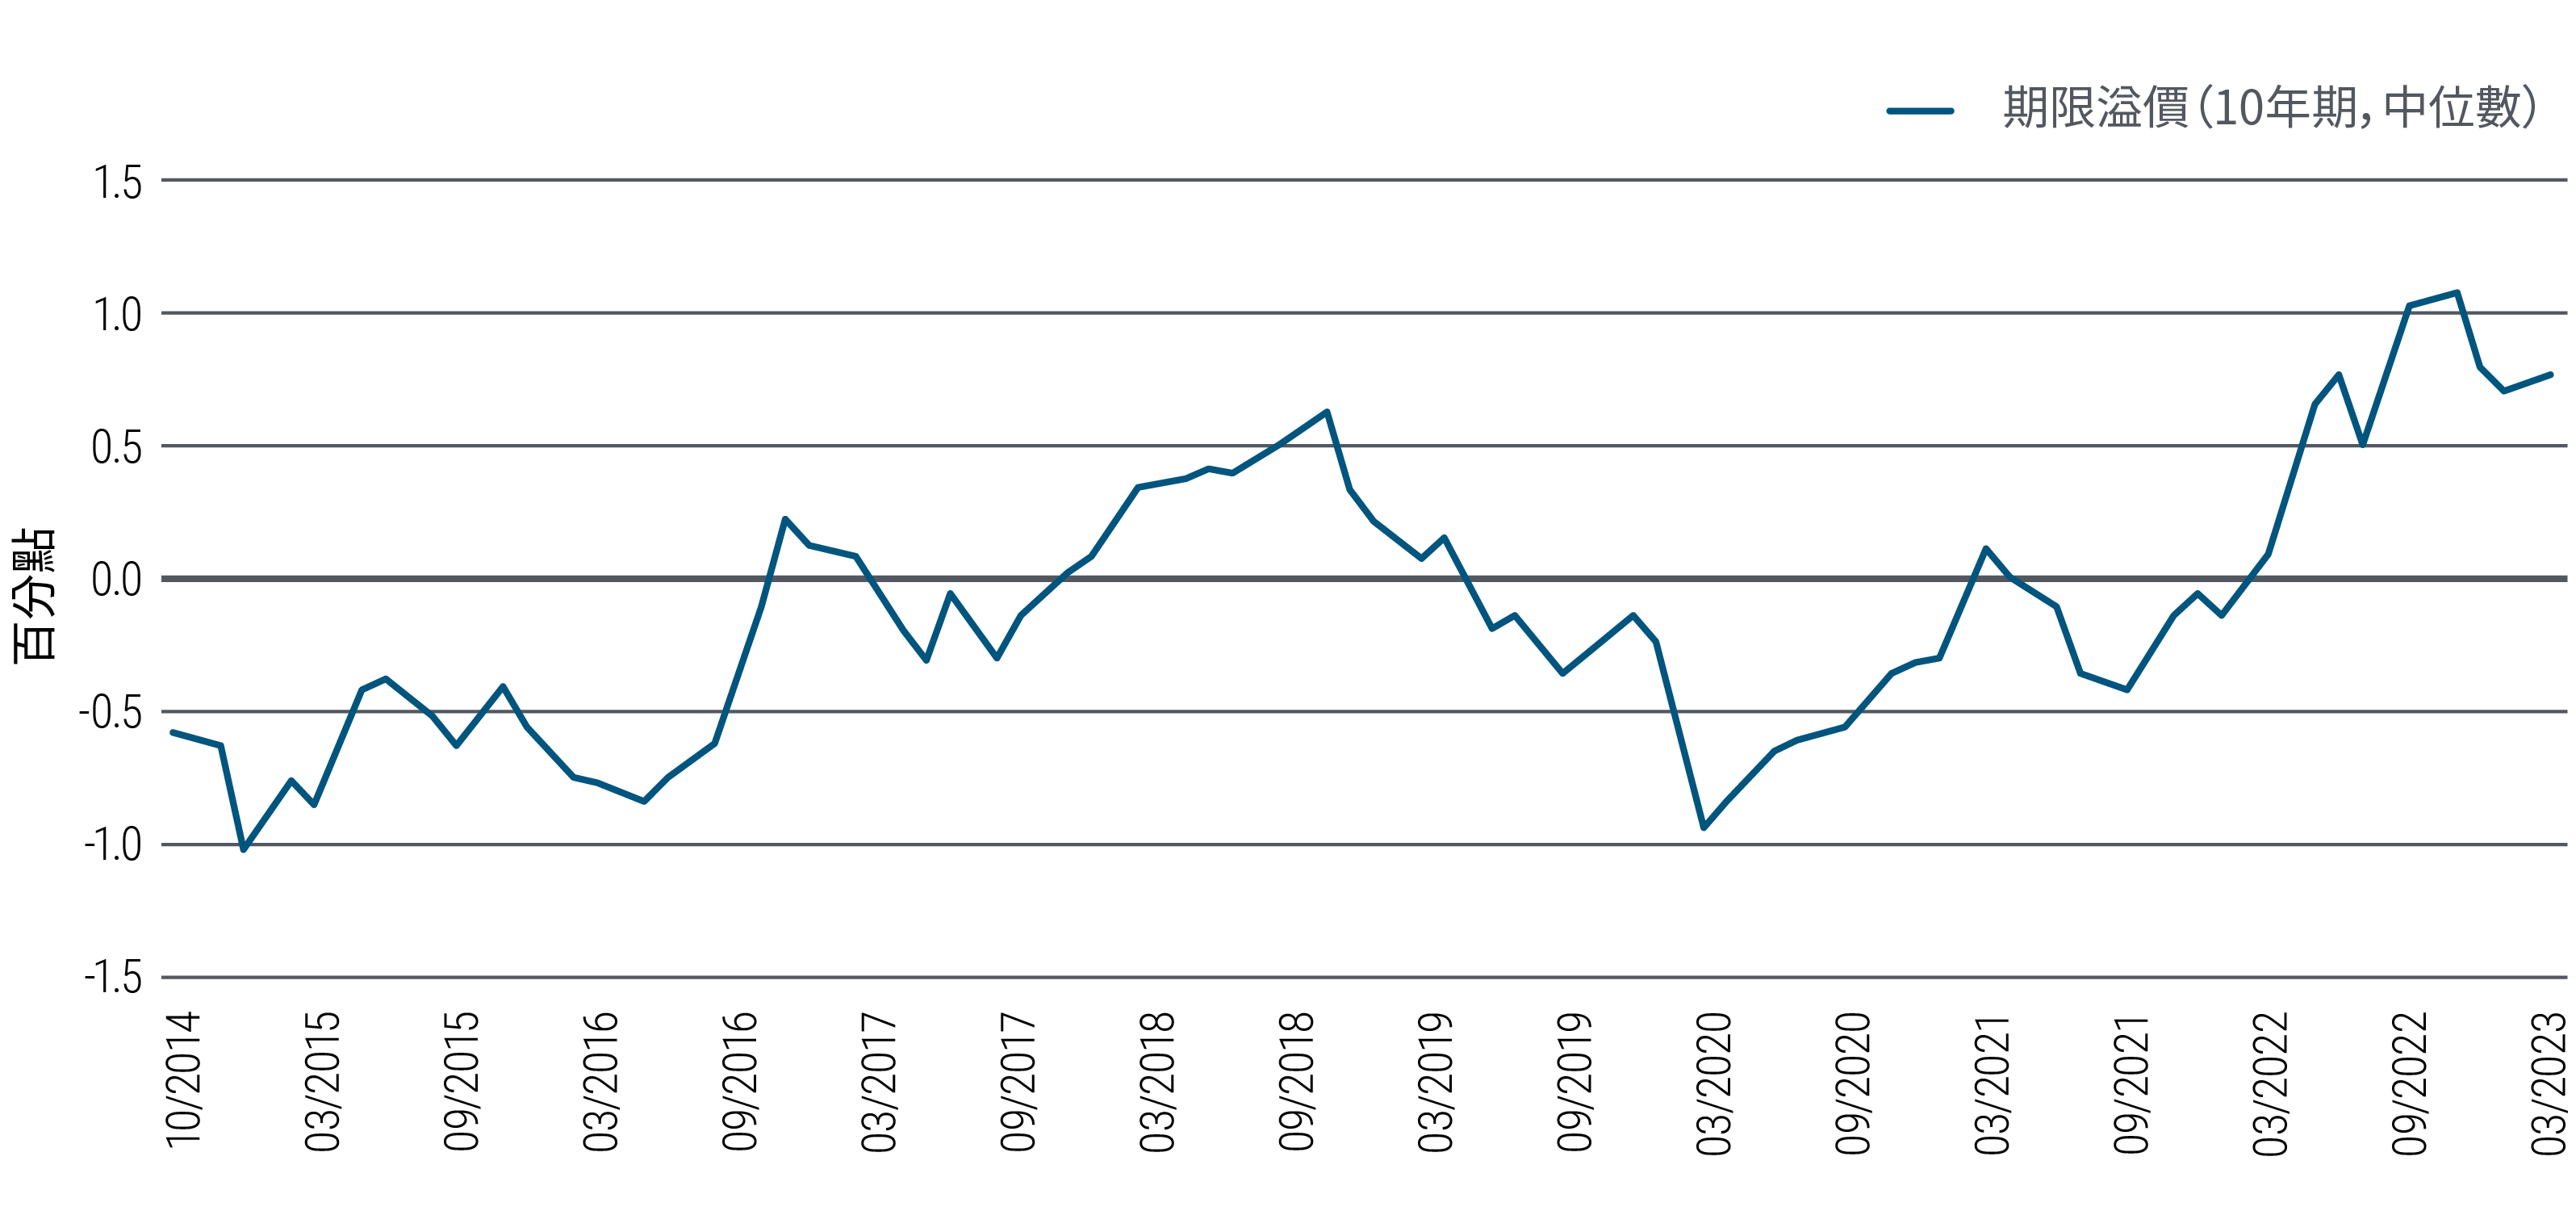 圖3的折線圖顯示美國10年期國庫券在2014年10月至2023年3月期間的期限溢價。期限溢價指投資者在債券期限內承擔利率可能變化的風險所需的補償（負值代表投資者願意為較長期債券的預期穩定性付出額外代價，常見於宏觀經濟或市場受壓時期）。在圖表的時間框架內，10年期國庫券的期限溢價曾在2015年1月觸及-1.02%的低位，其後在2018年11月升至0.62%，在2020年3月跌至-0.94%，並在2022年11月到達1.07%的高位。截至2023年3月的期限溢價為0.76%。